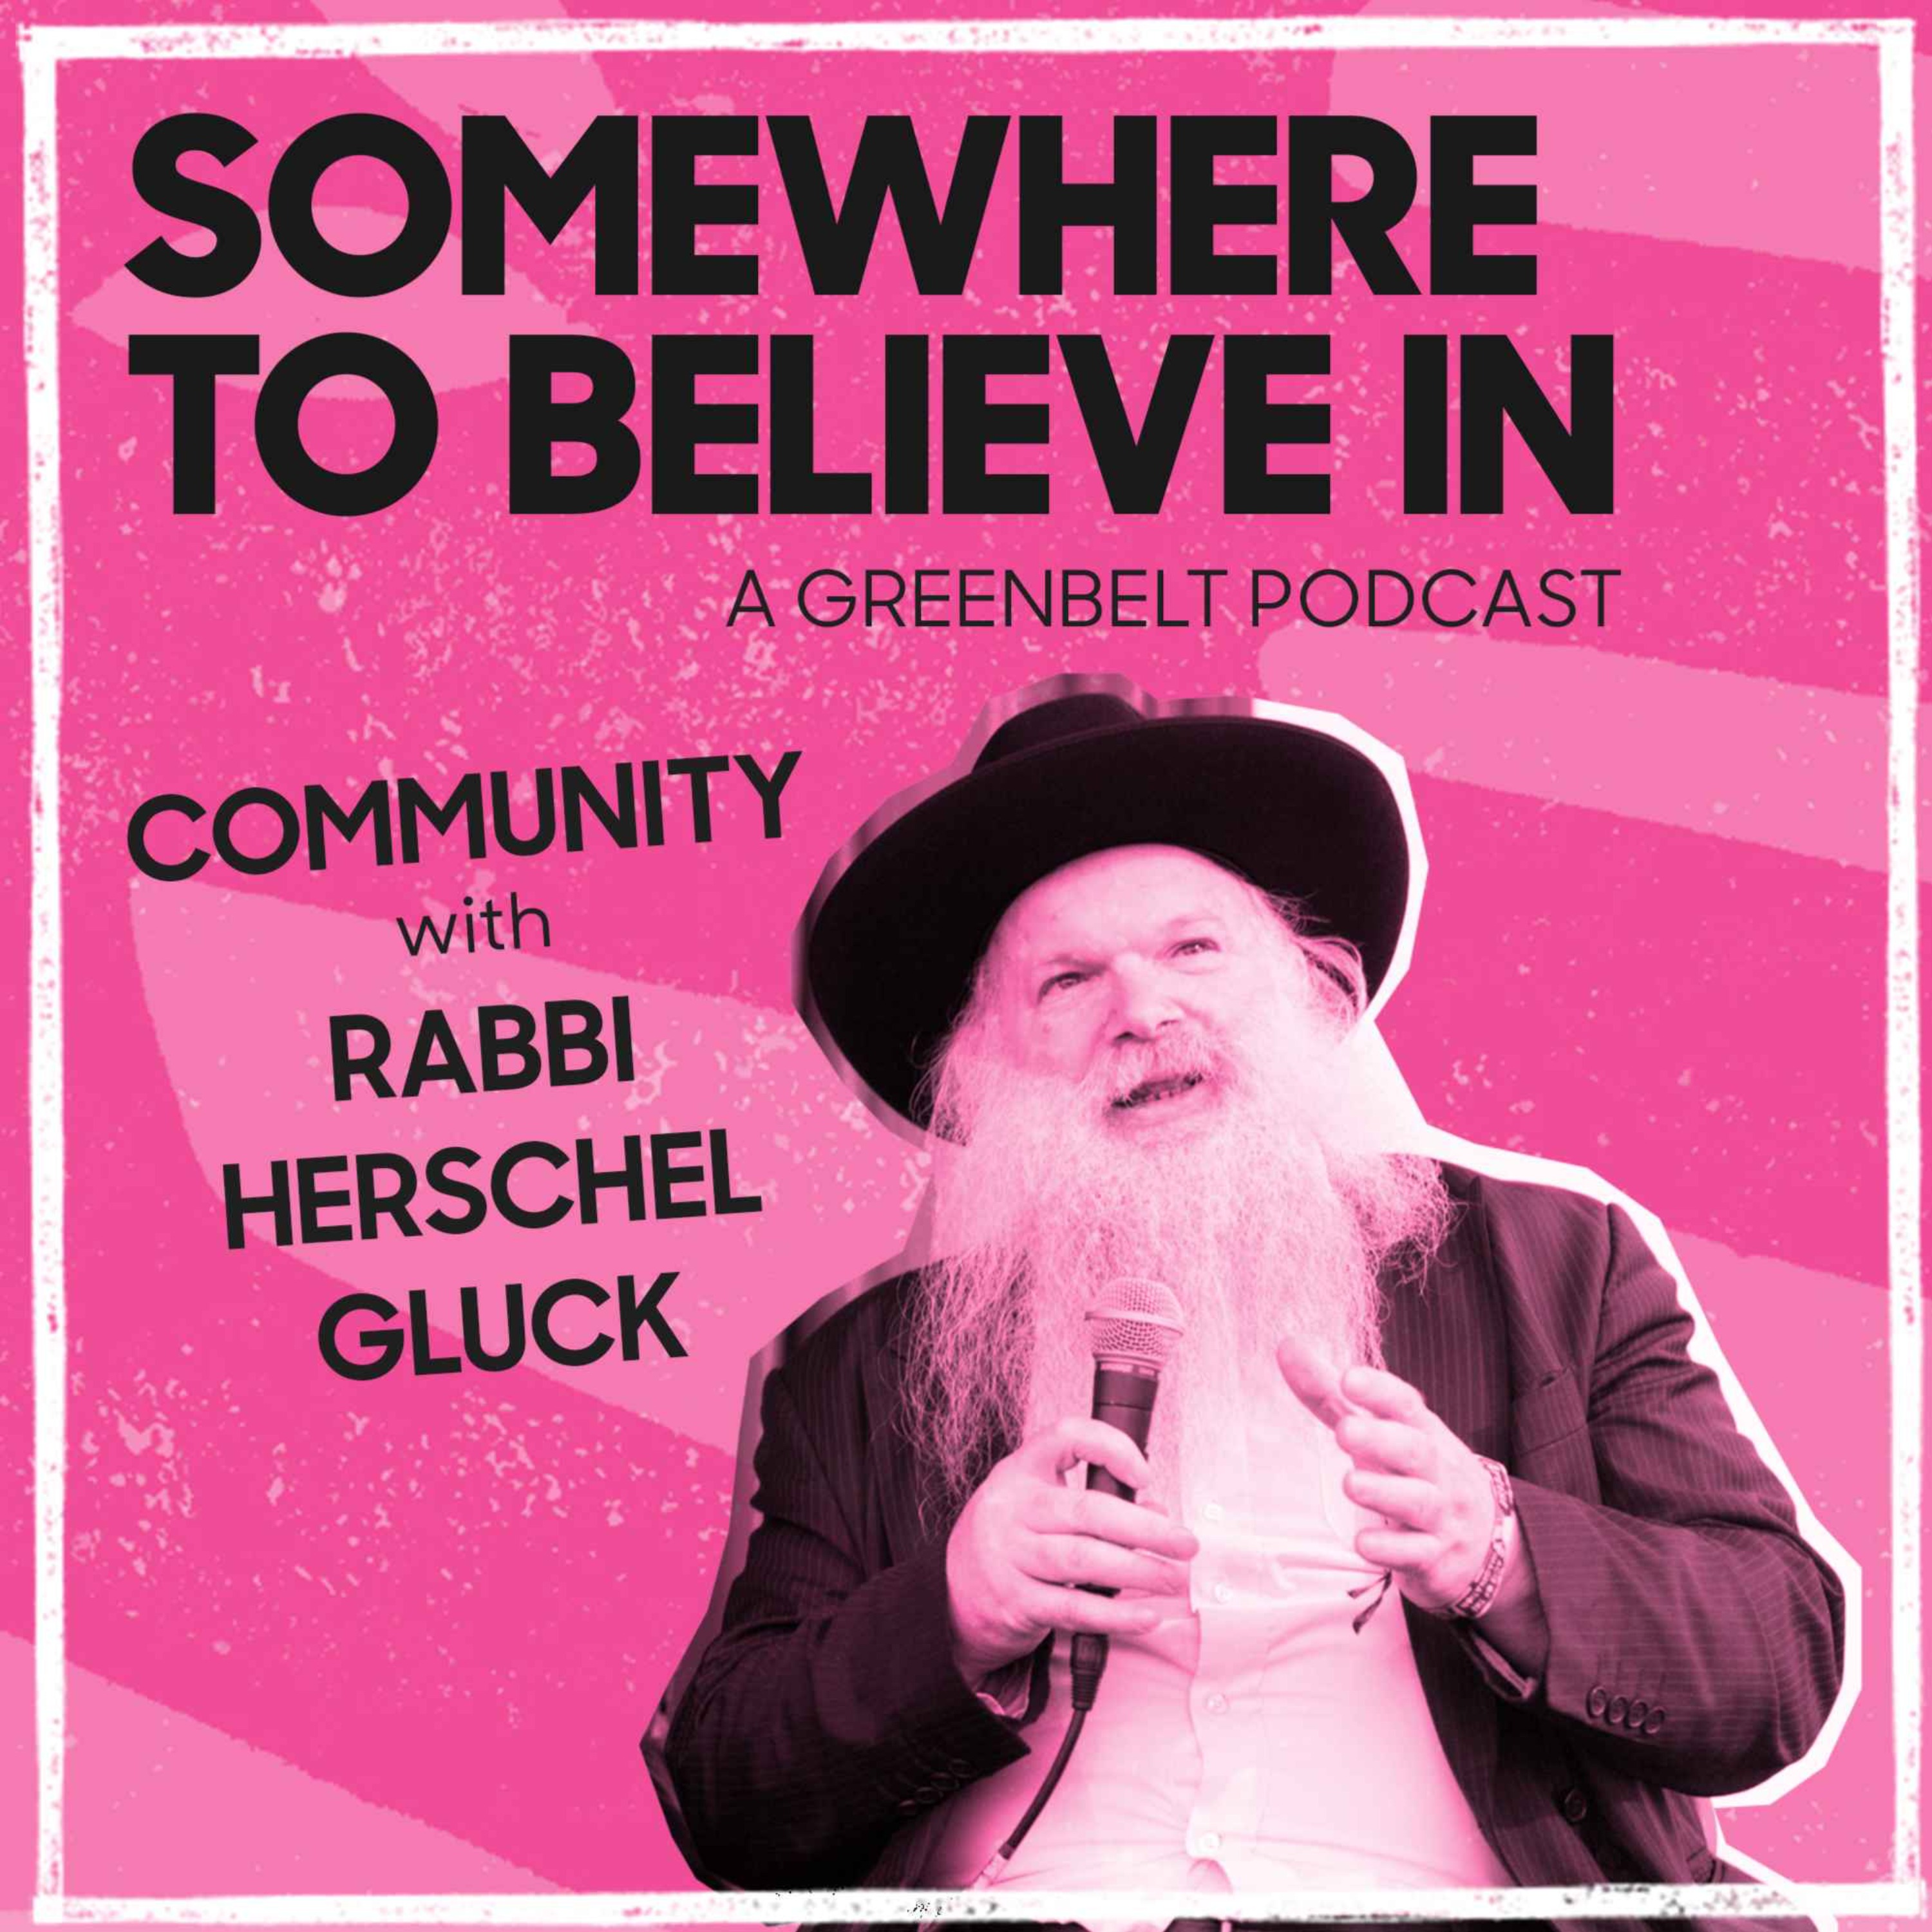 Community with Rabbi Herschel Gluck